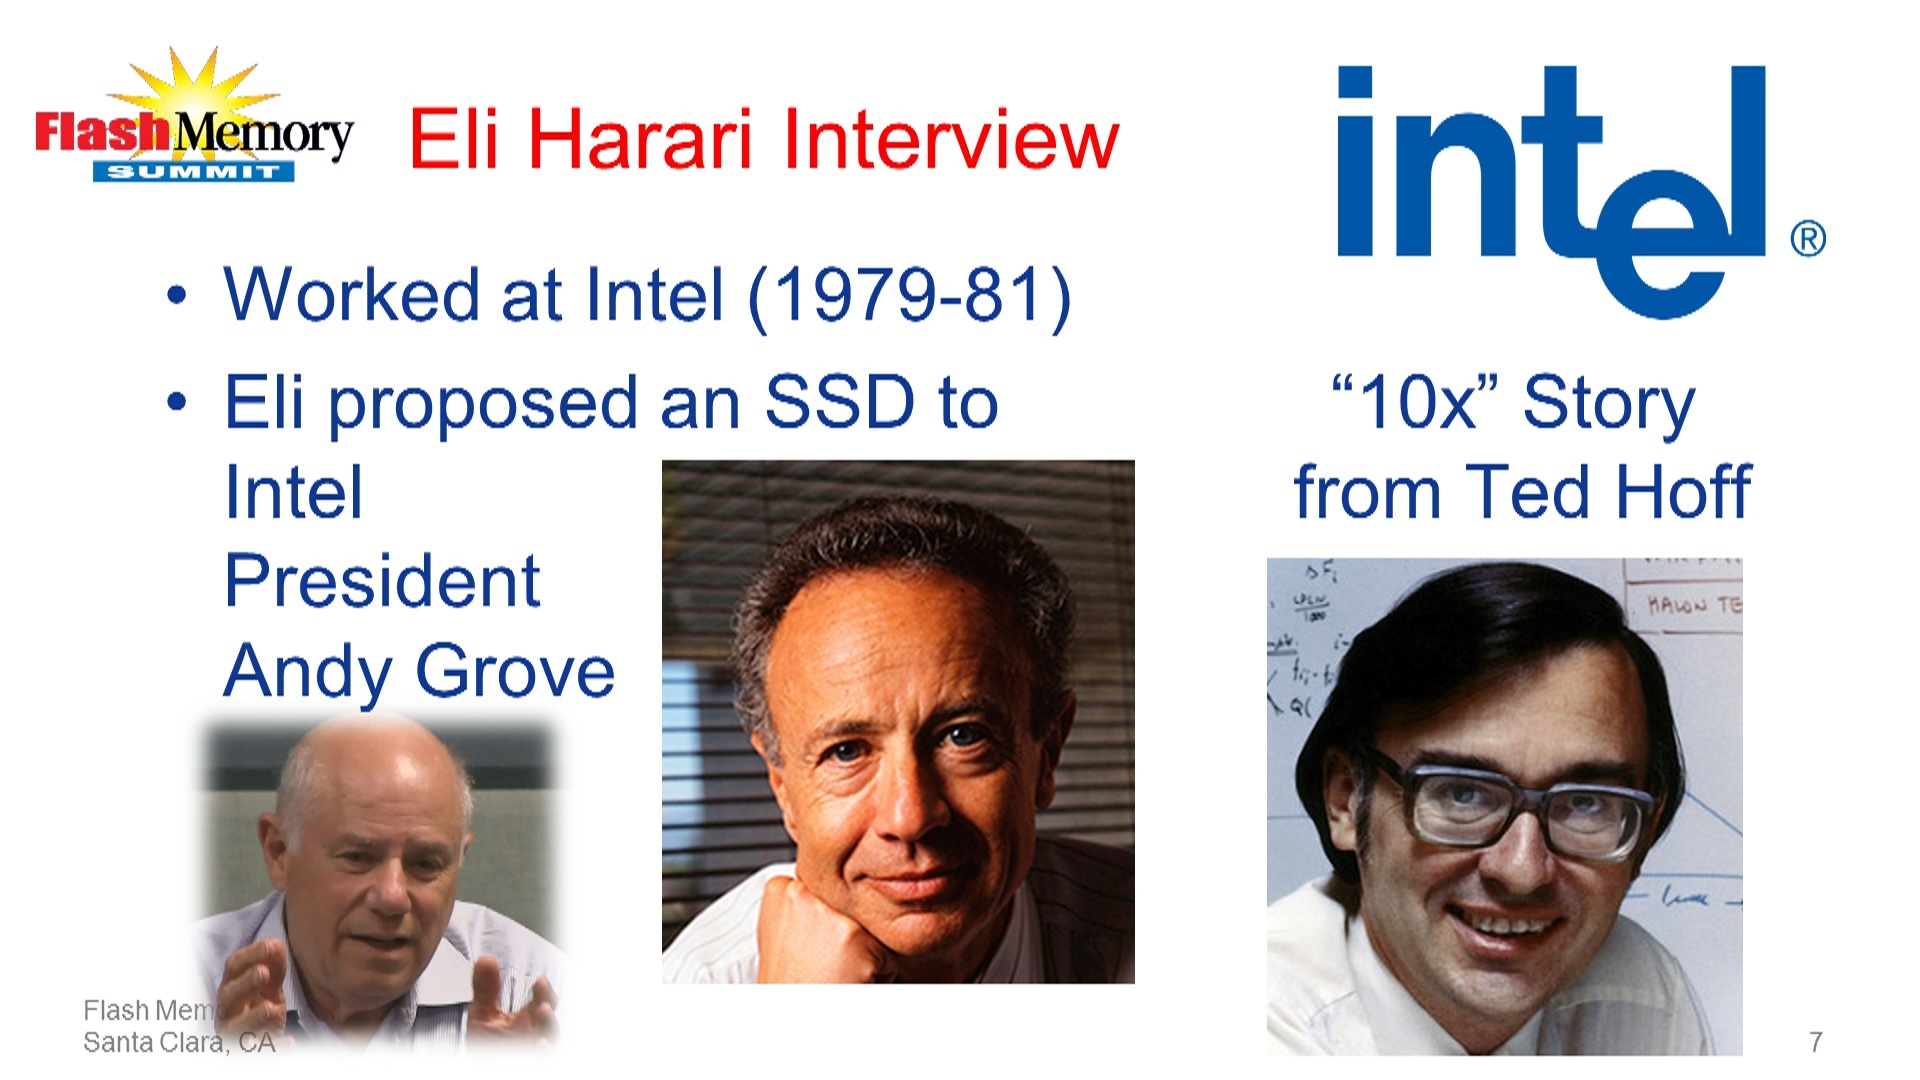 Eli Harari looks back at his time at Intel.